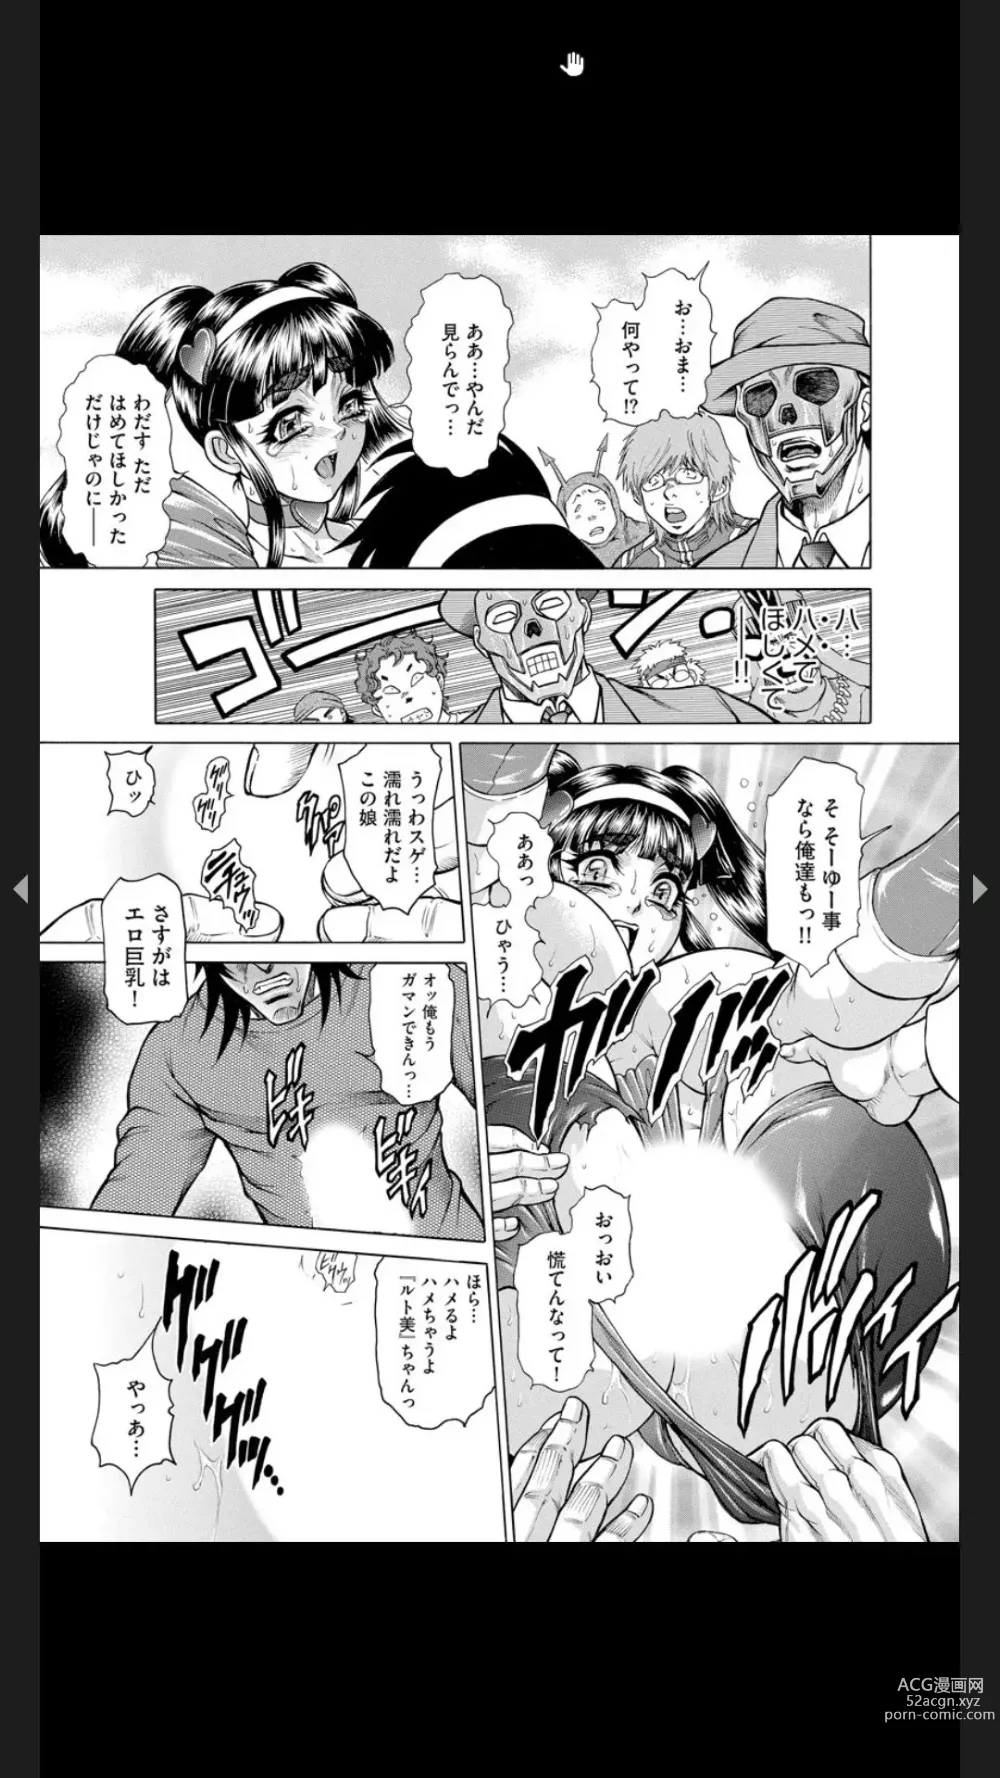 Page 192 of manga Injuku Meniku Mugobatsu